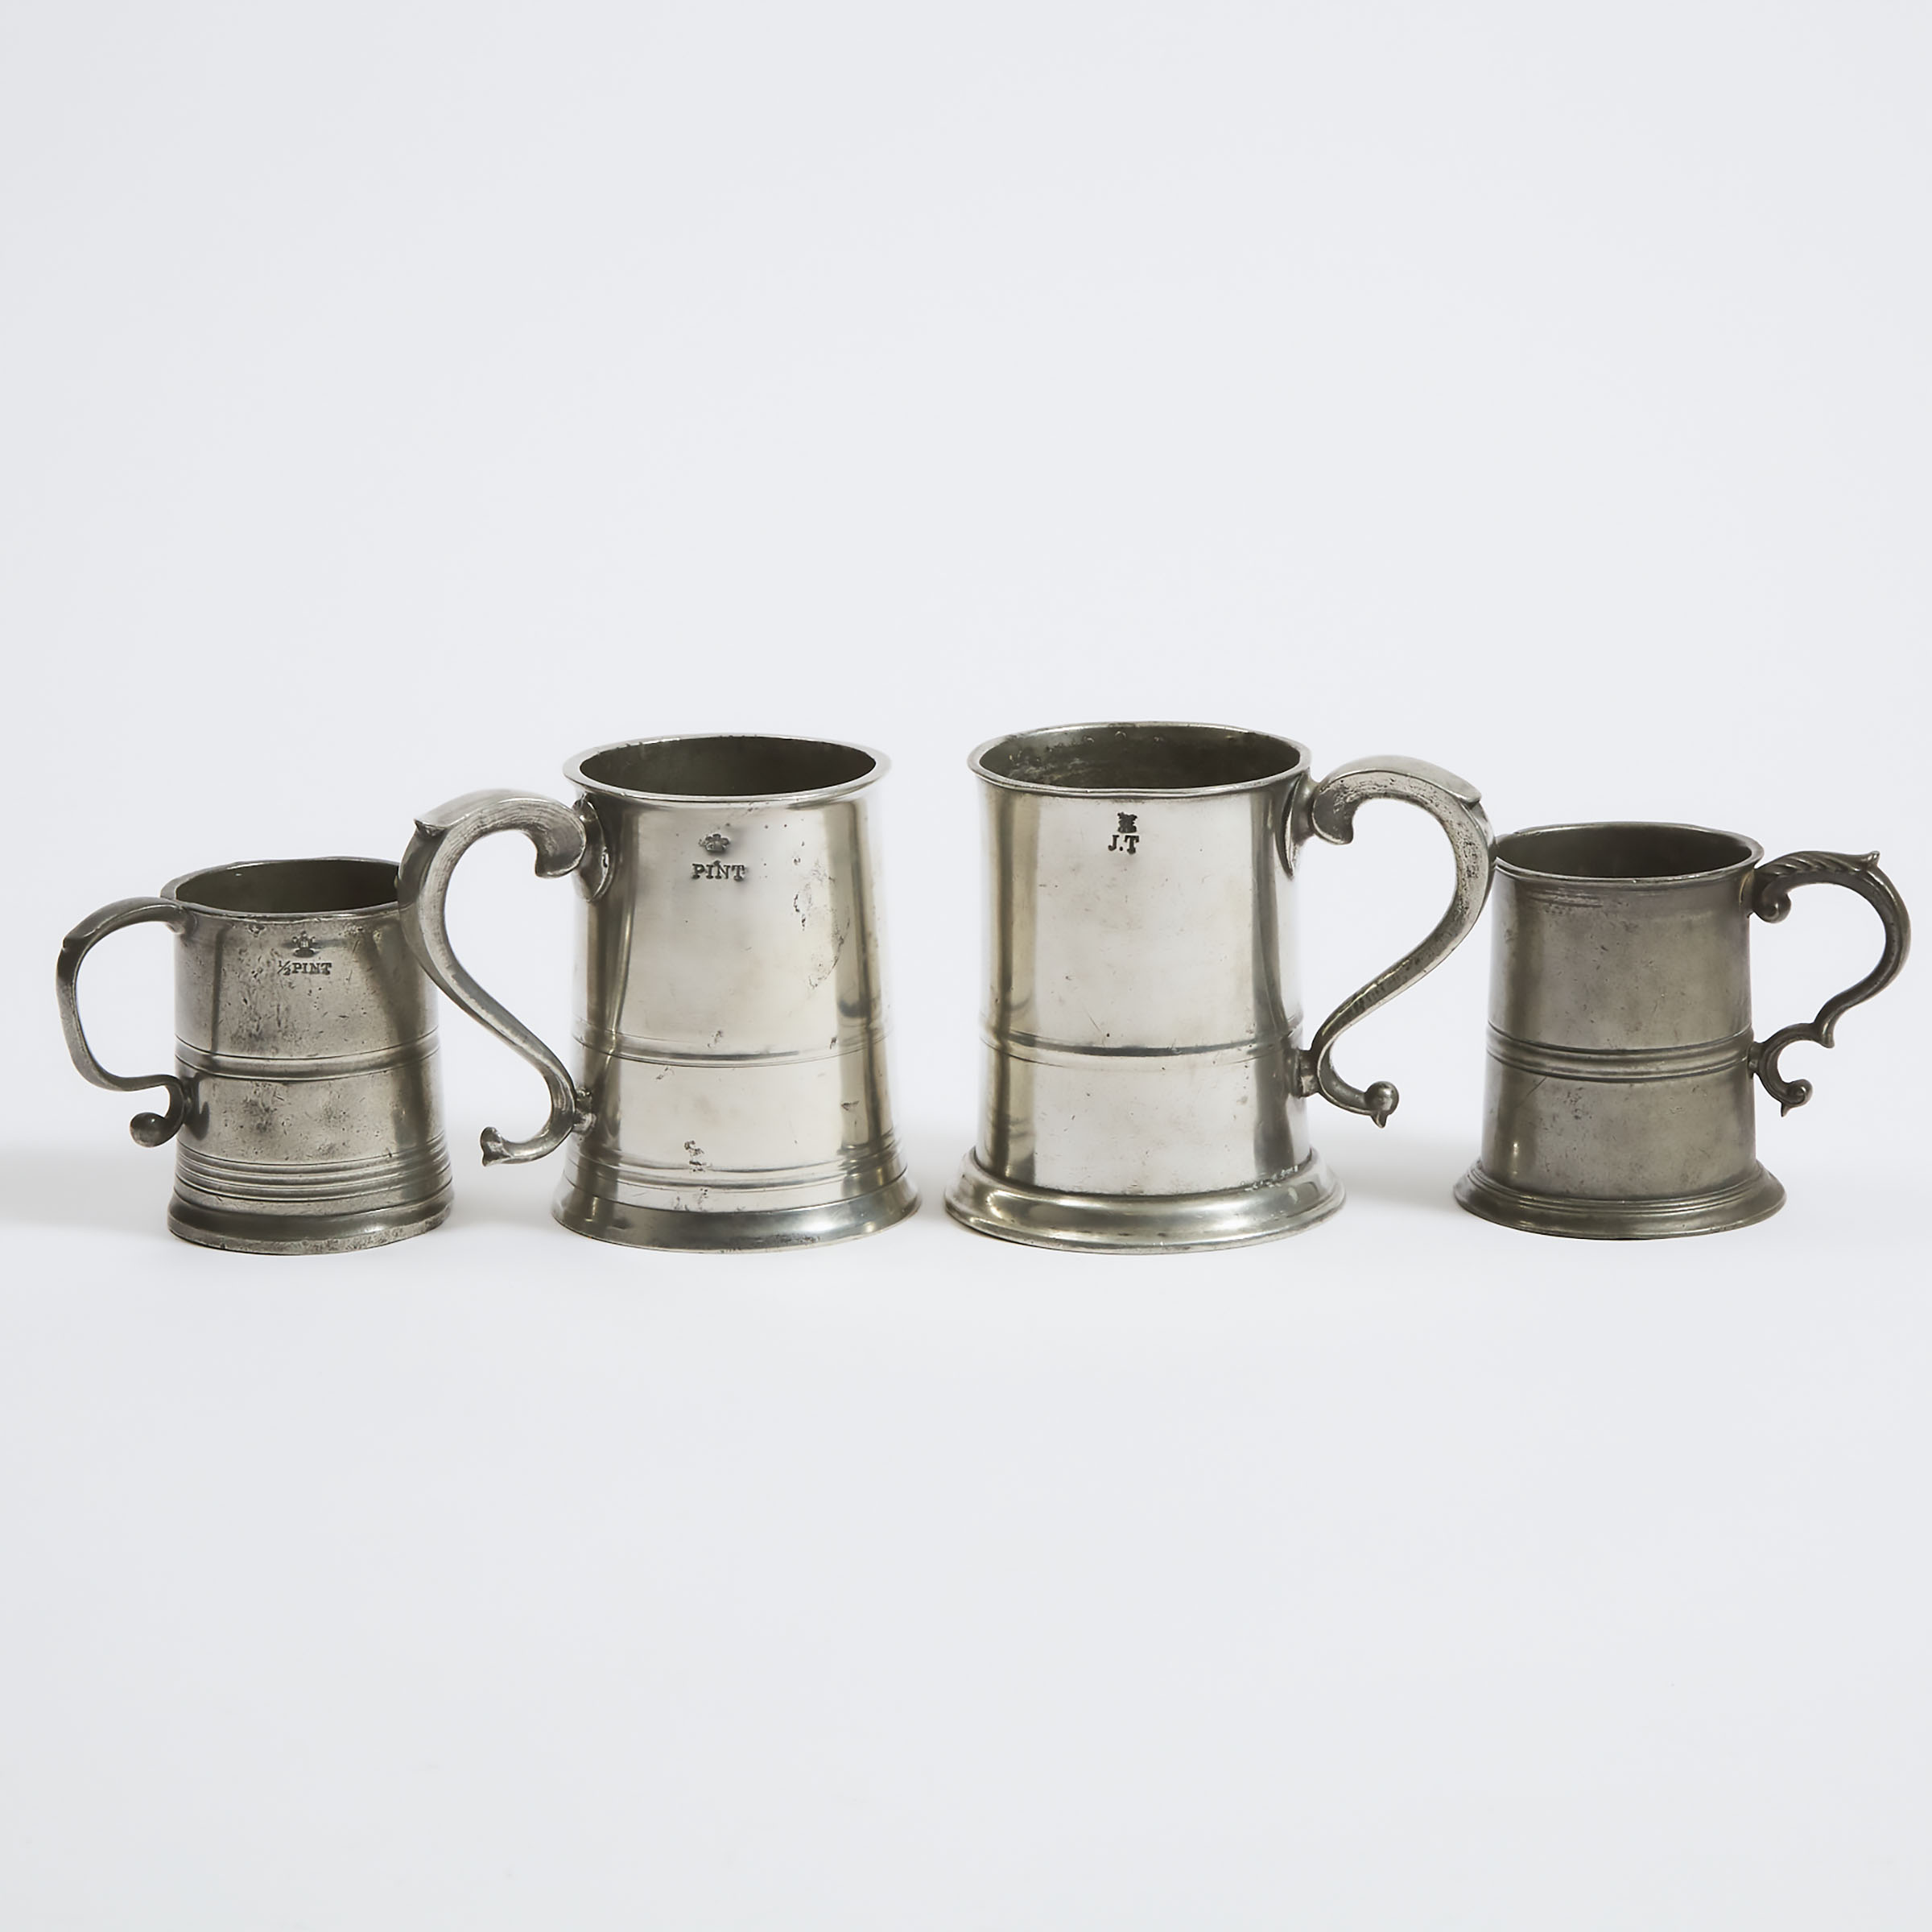 Four Scottish Pewter Mugs, 19th